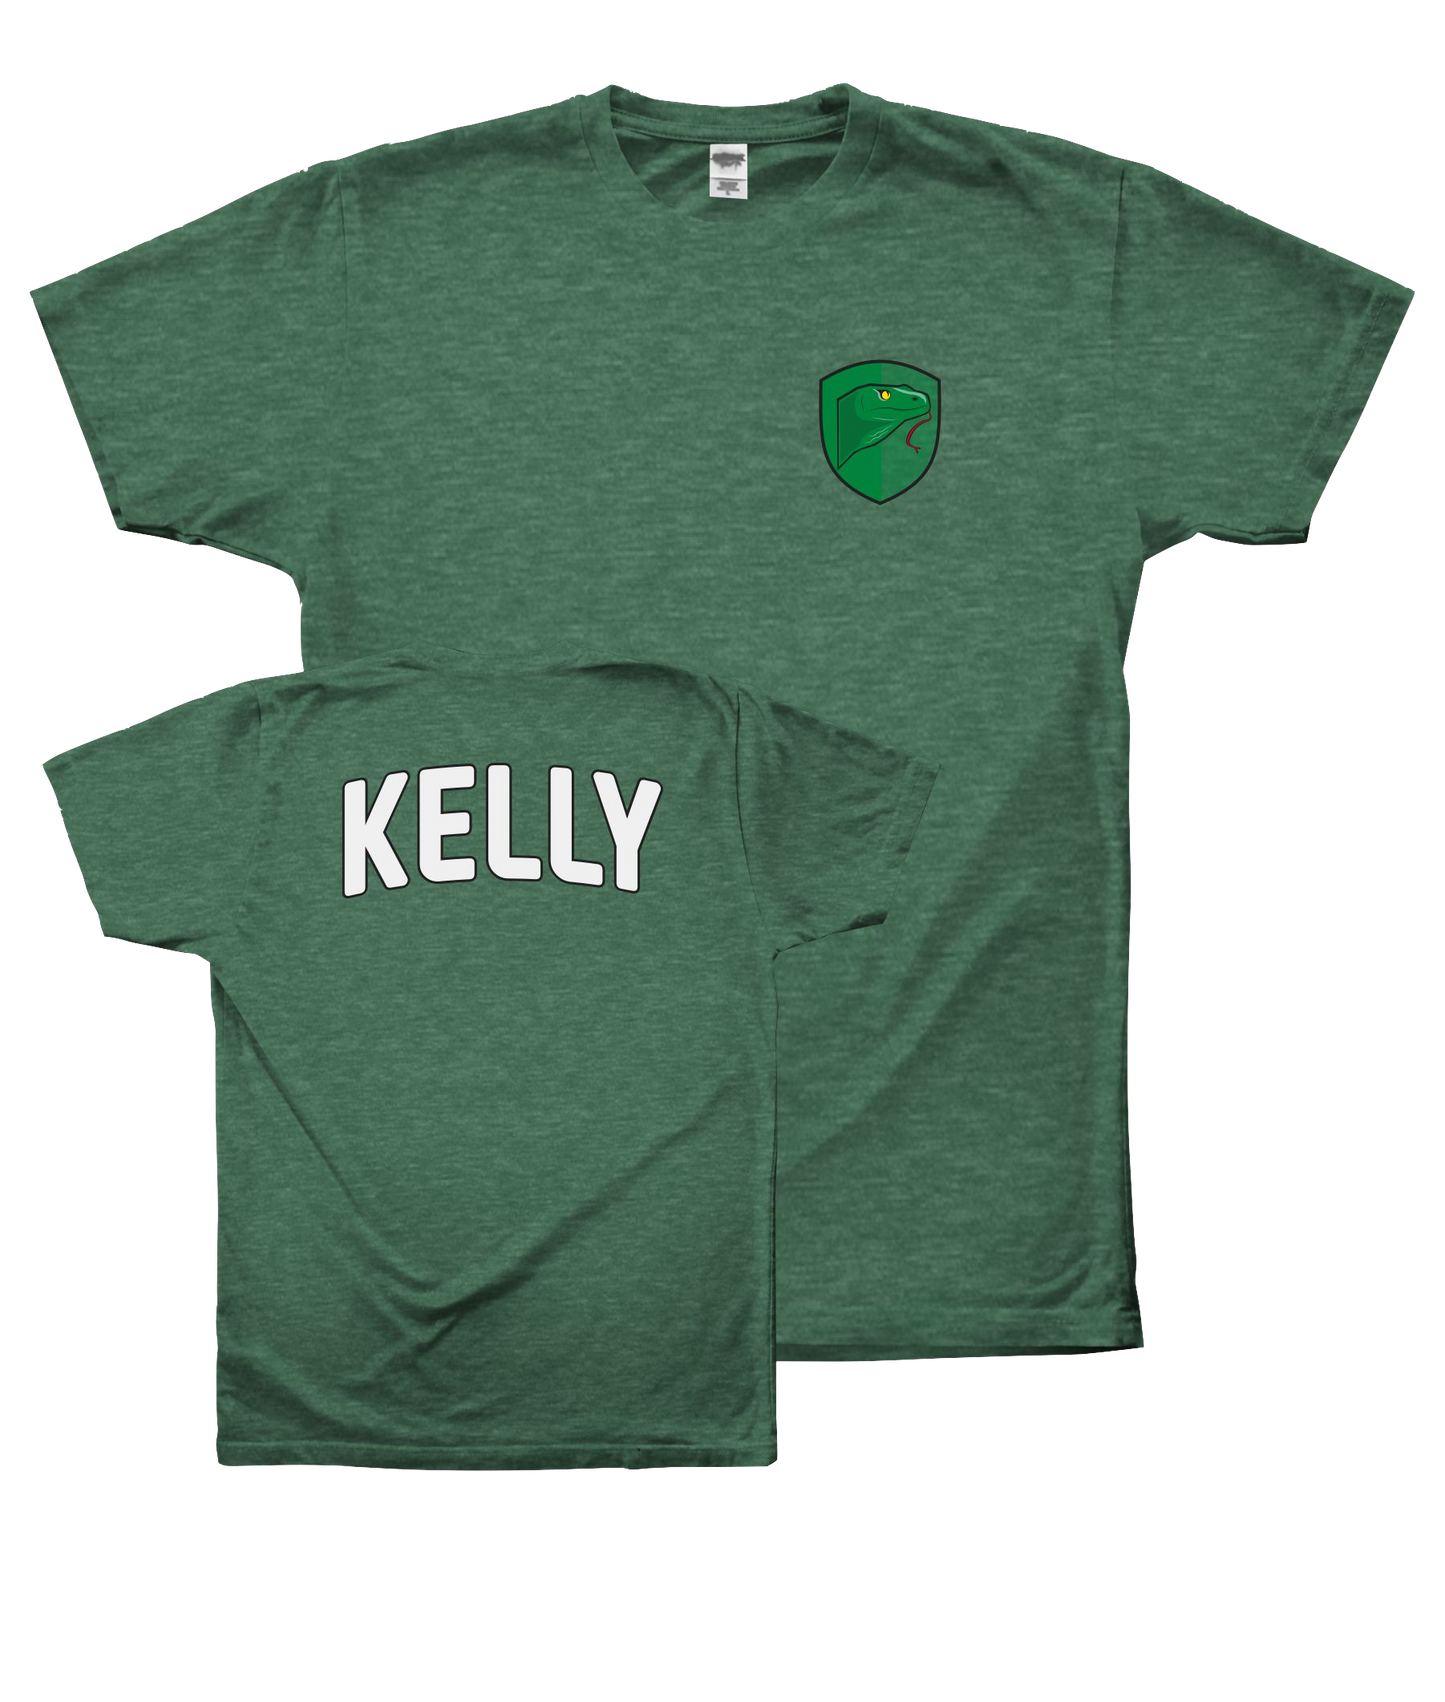 Kelly Shirt: A